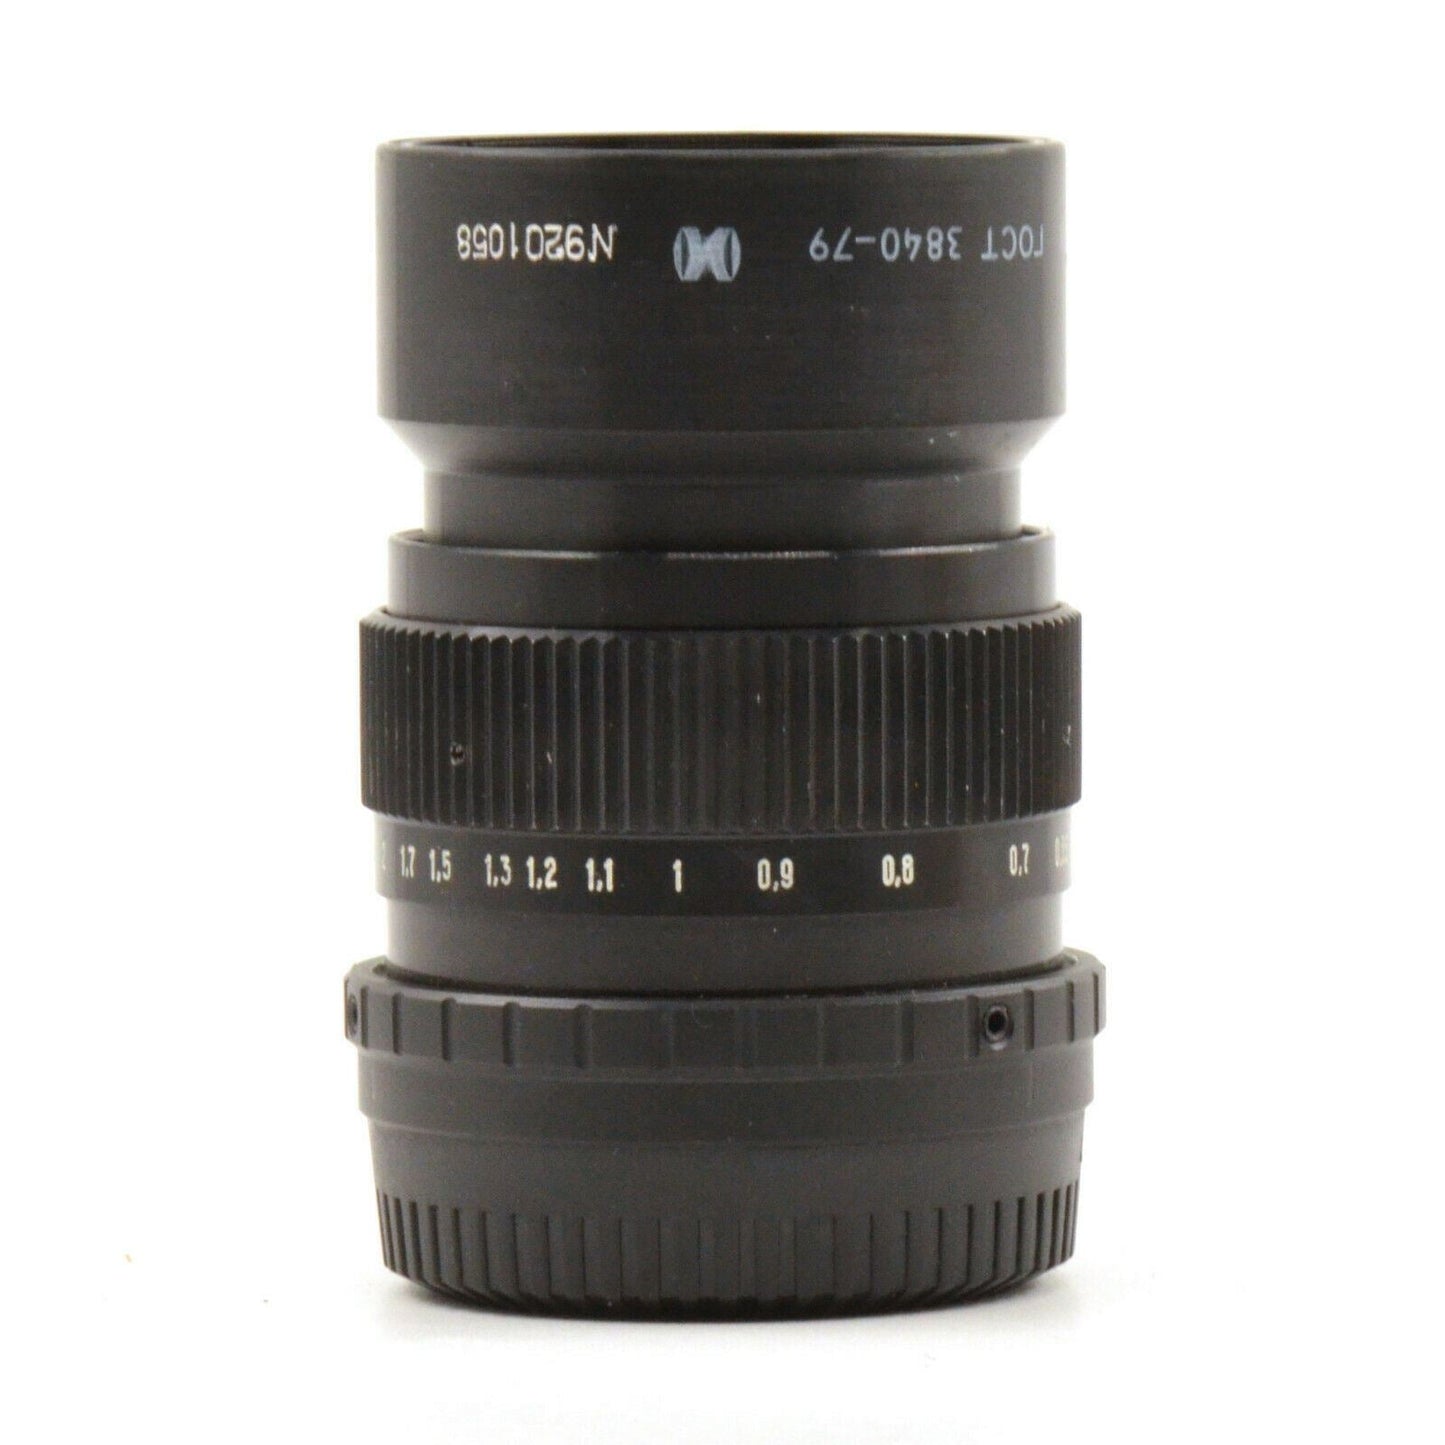 50mm F1.2 Fast Lens